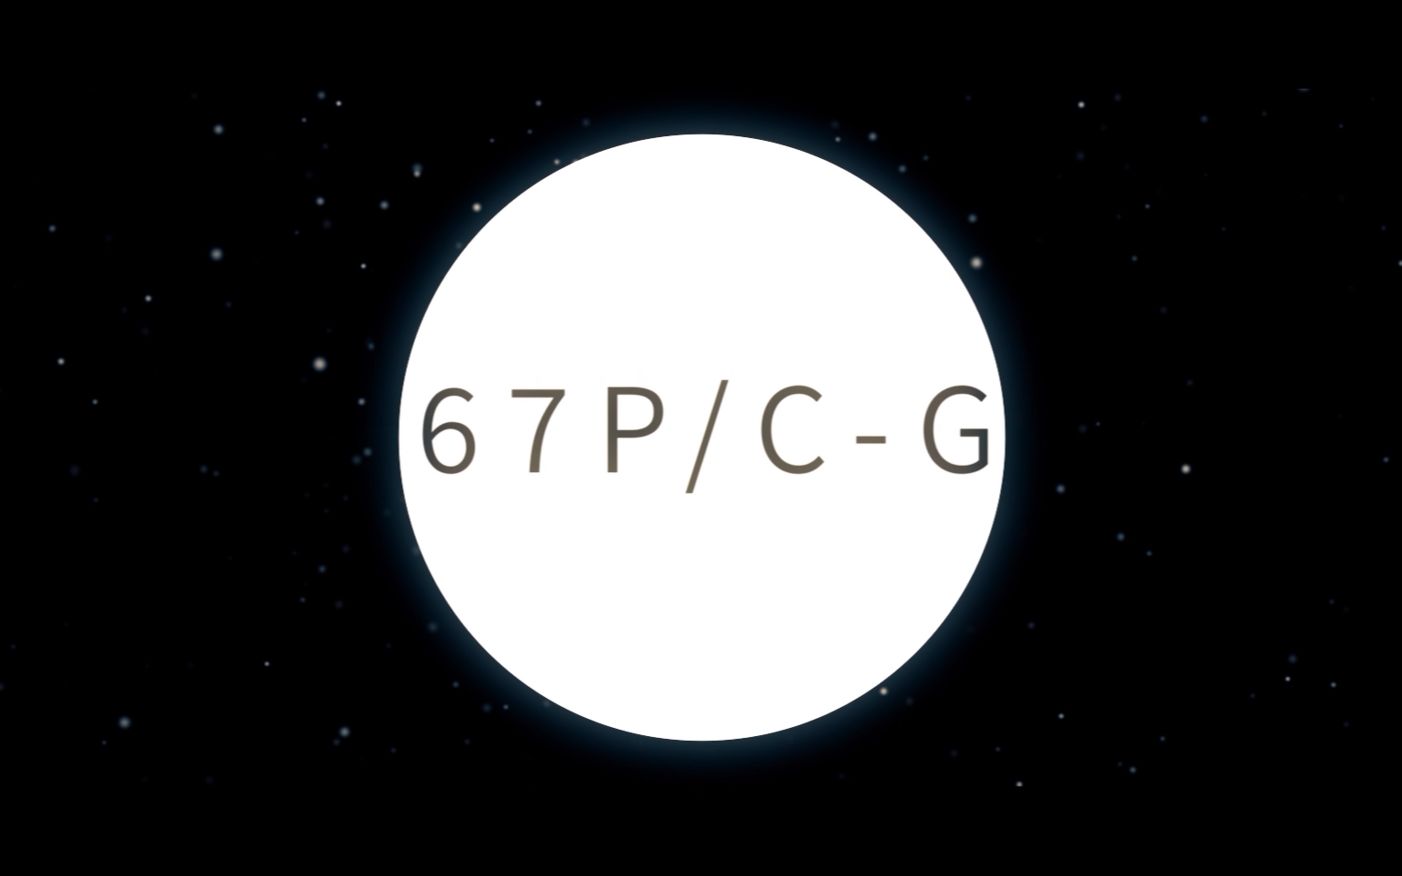 67P C G.jpg